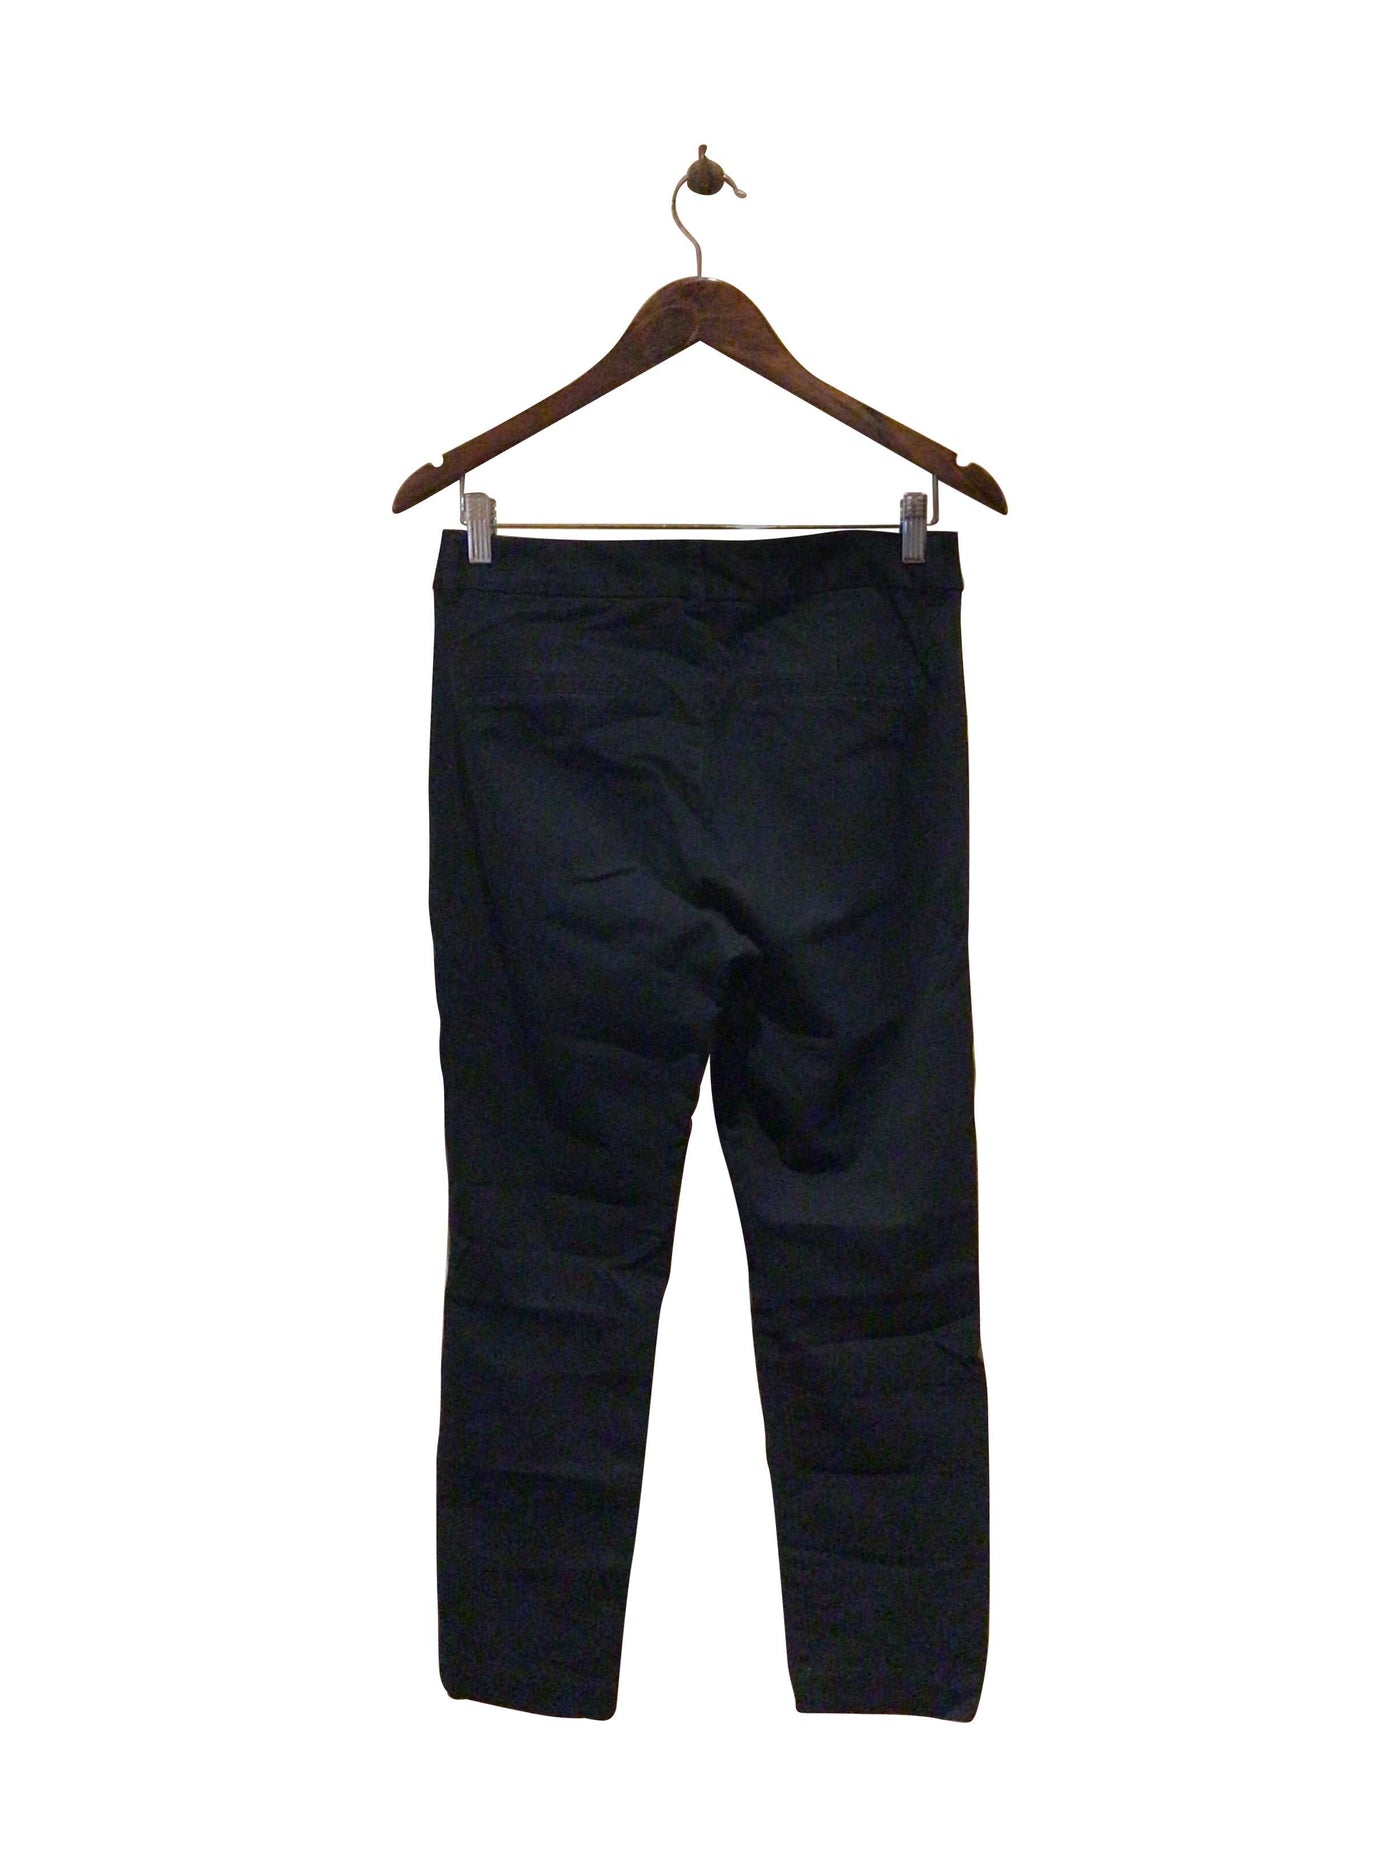 OLD NAVY Regular fit Pant in Black  -  8  13.99 Koop